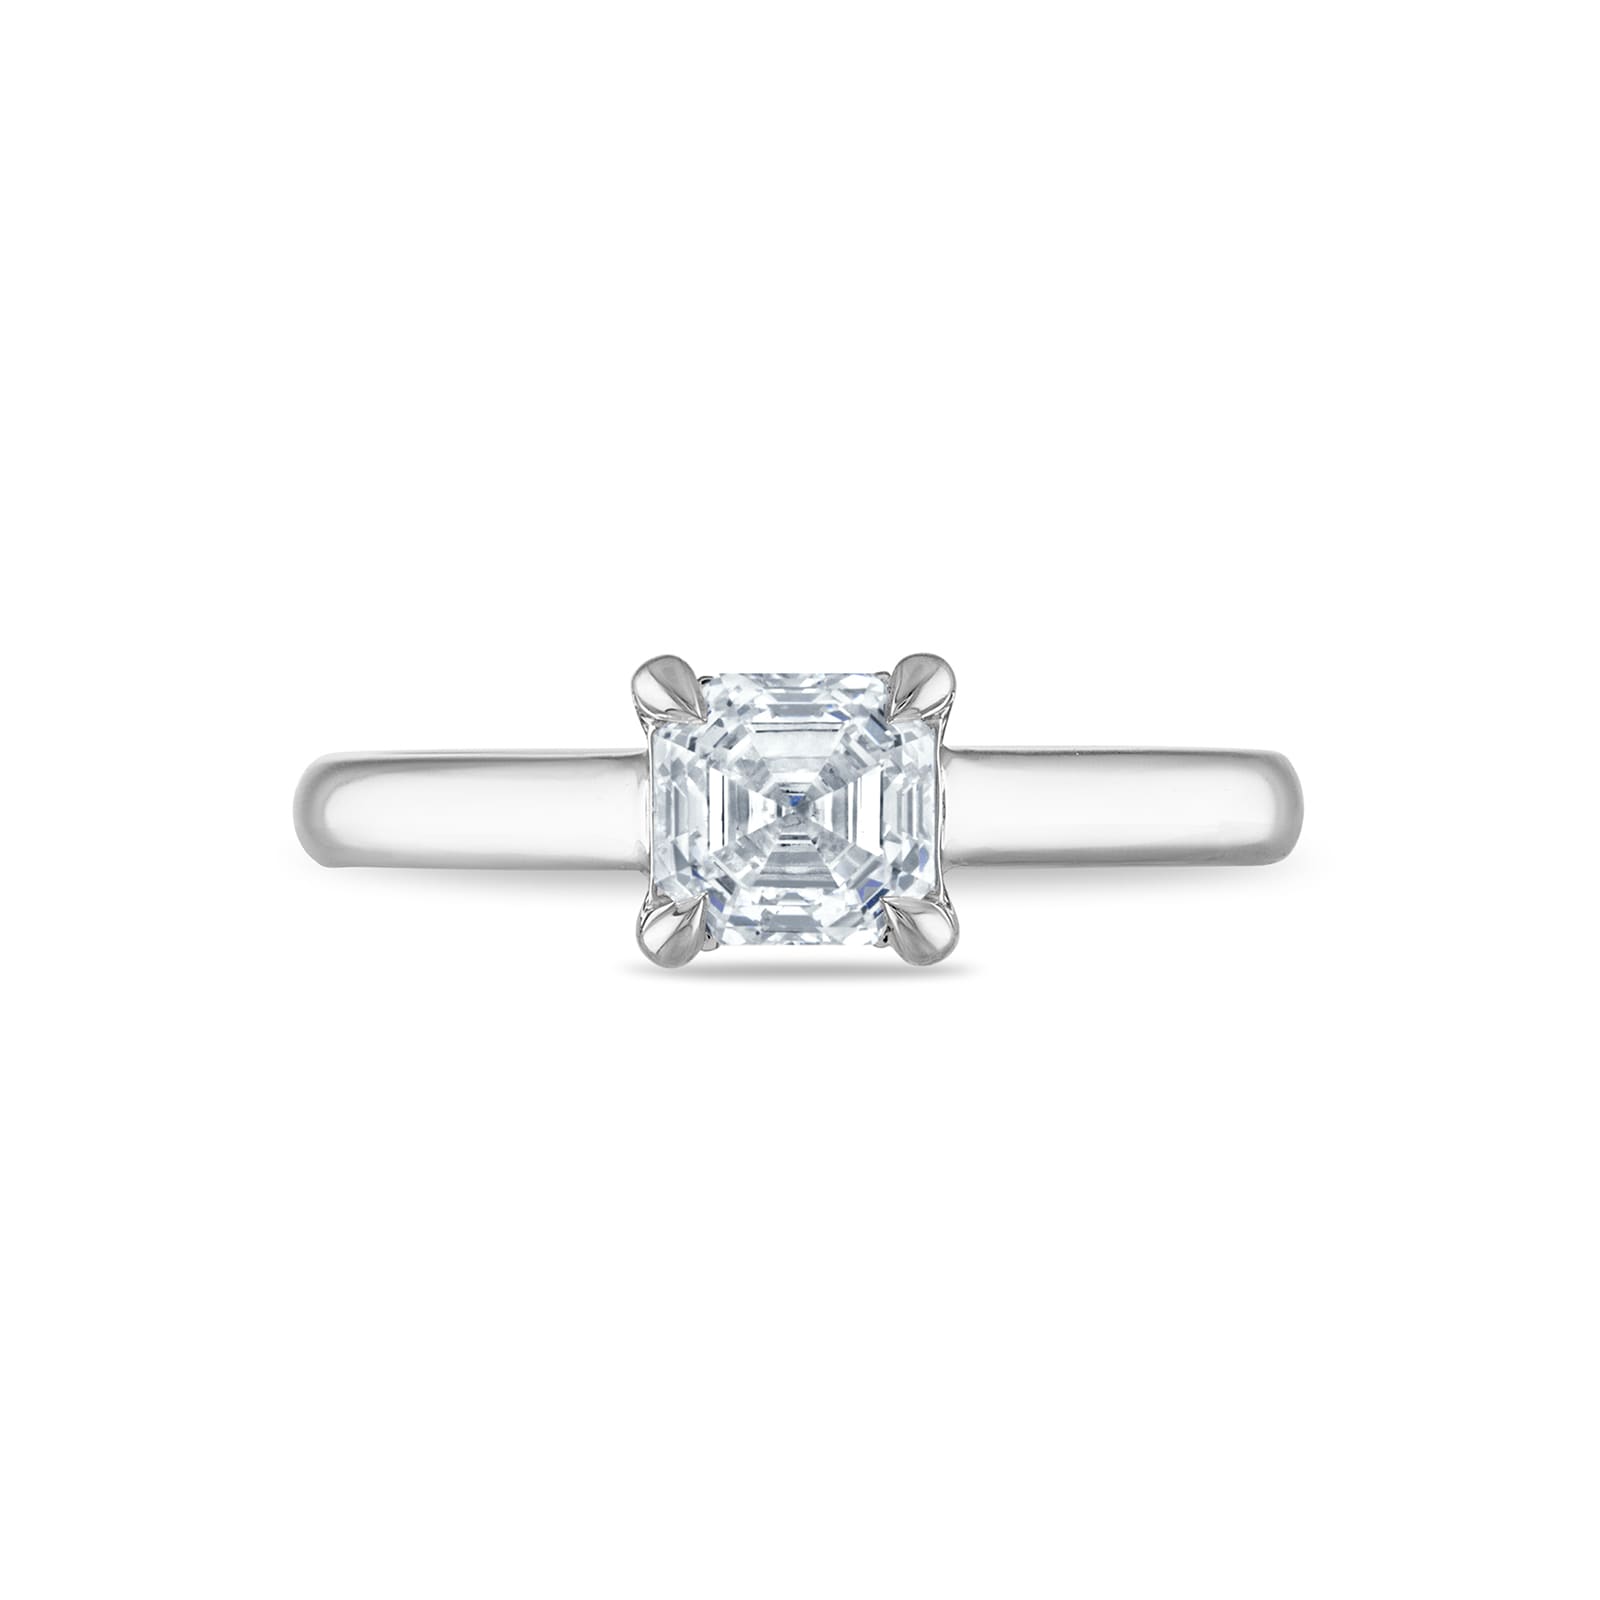 Platinum 1.05cttw Royal Asscher Cut Diamond Berenice Solitaire Engagement Ring